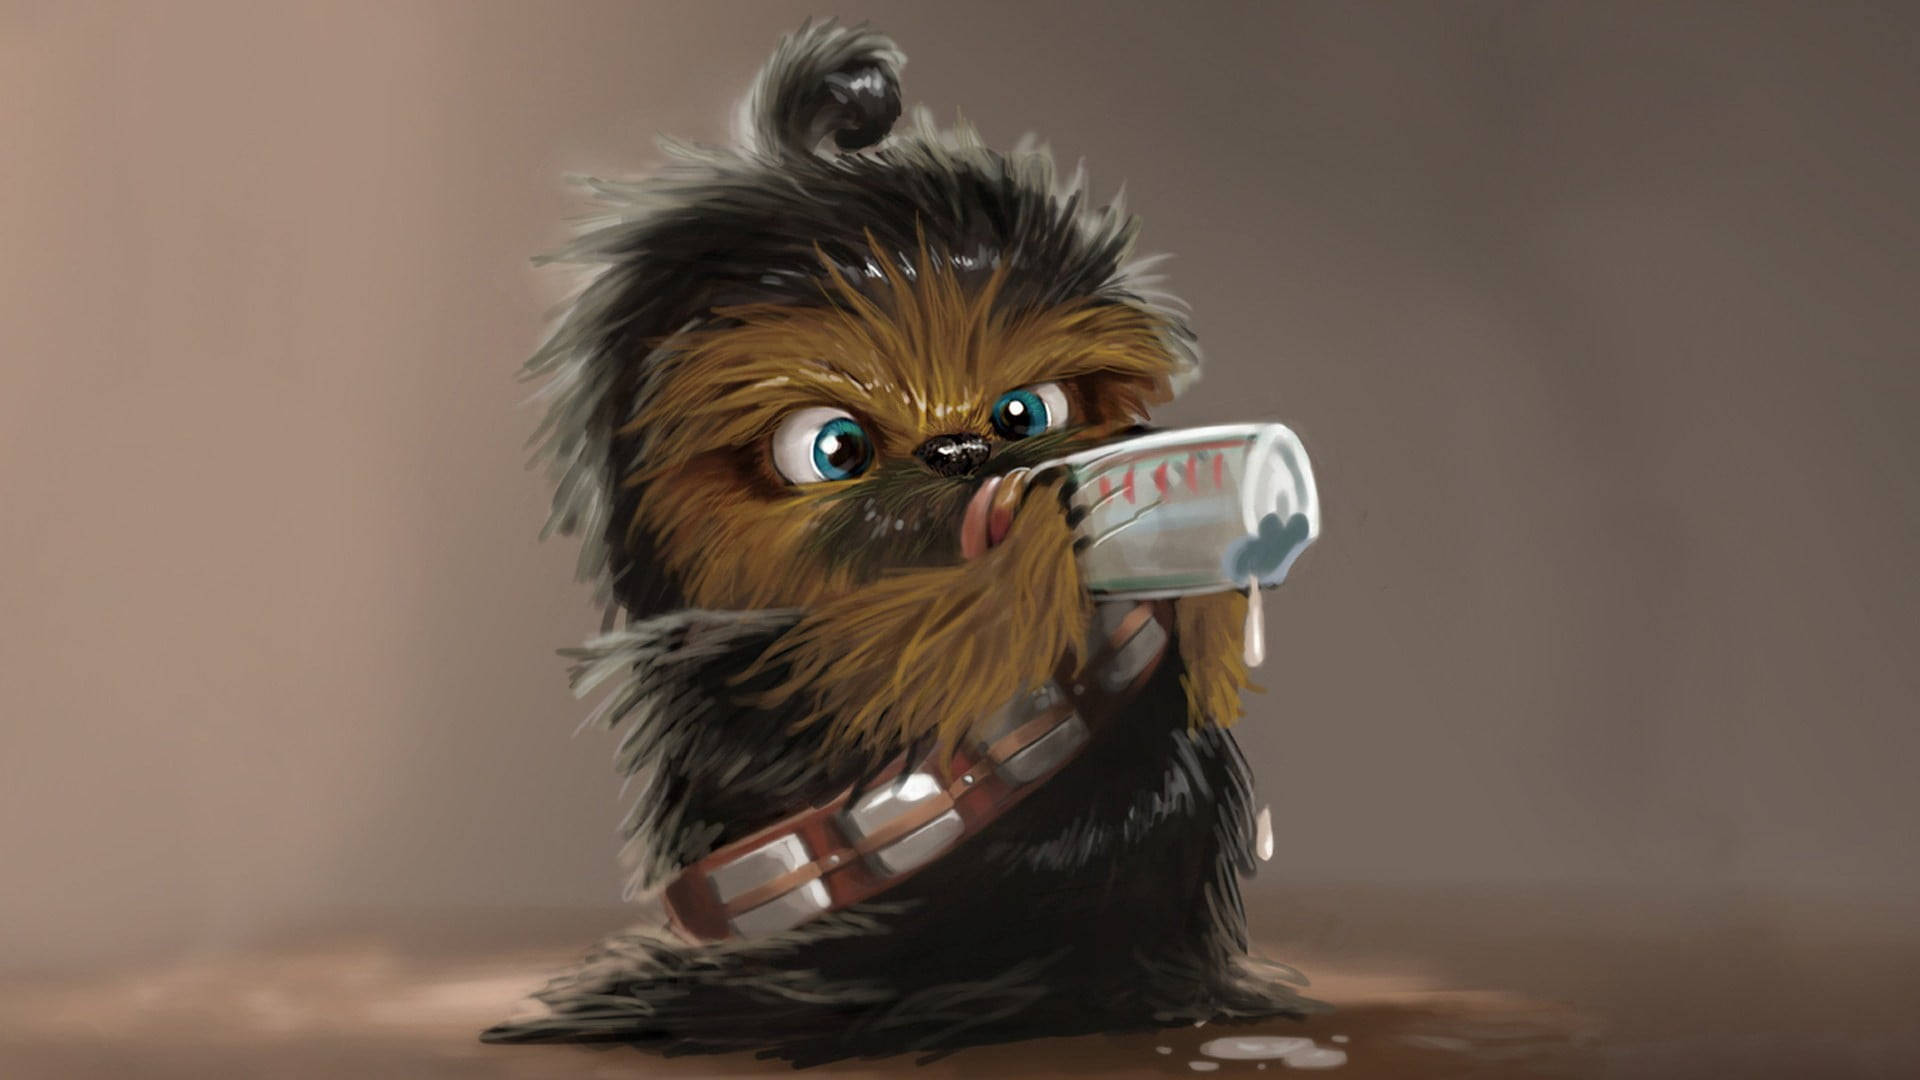 Chibi Baby Chewbacca Digital Painting Background